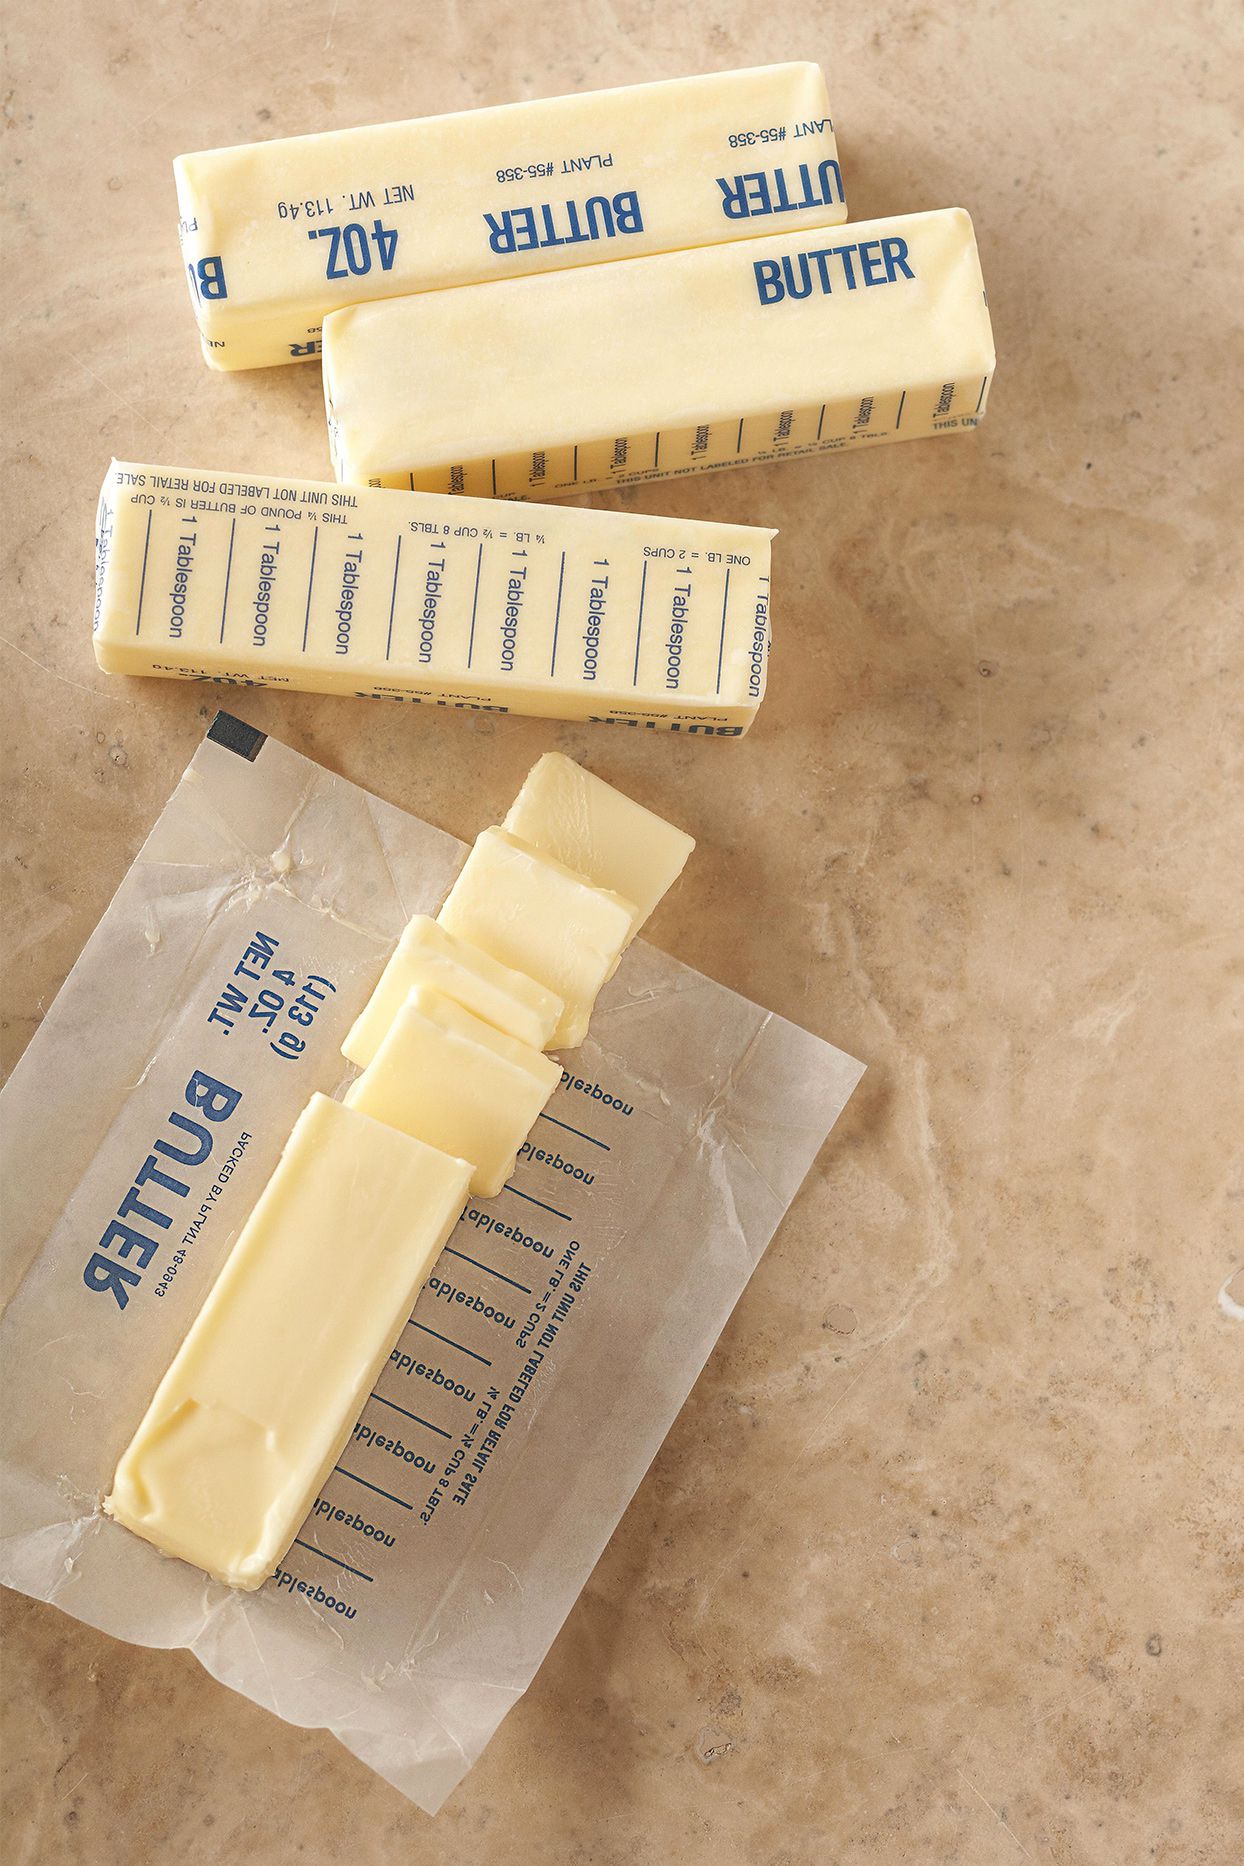 calories in 1 tbsp butter